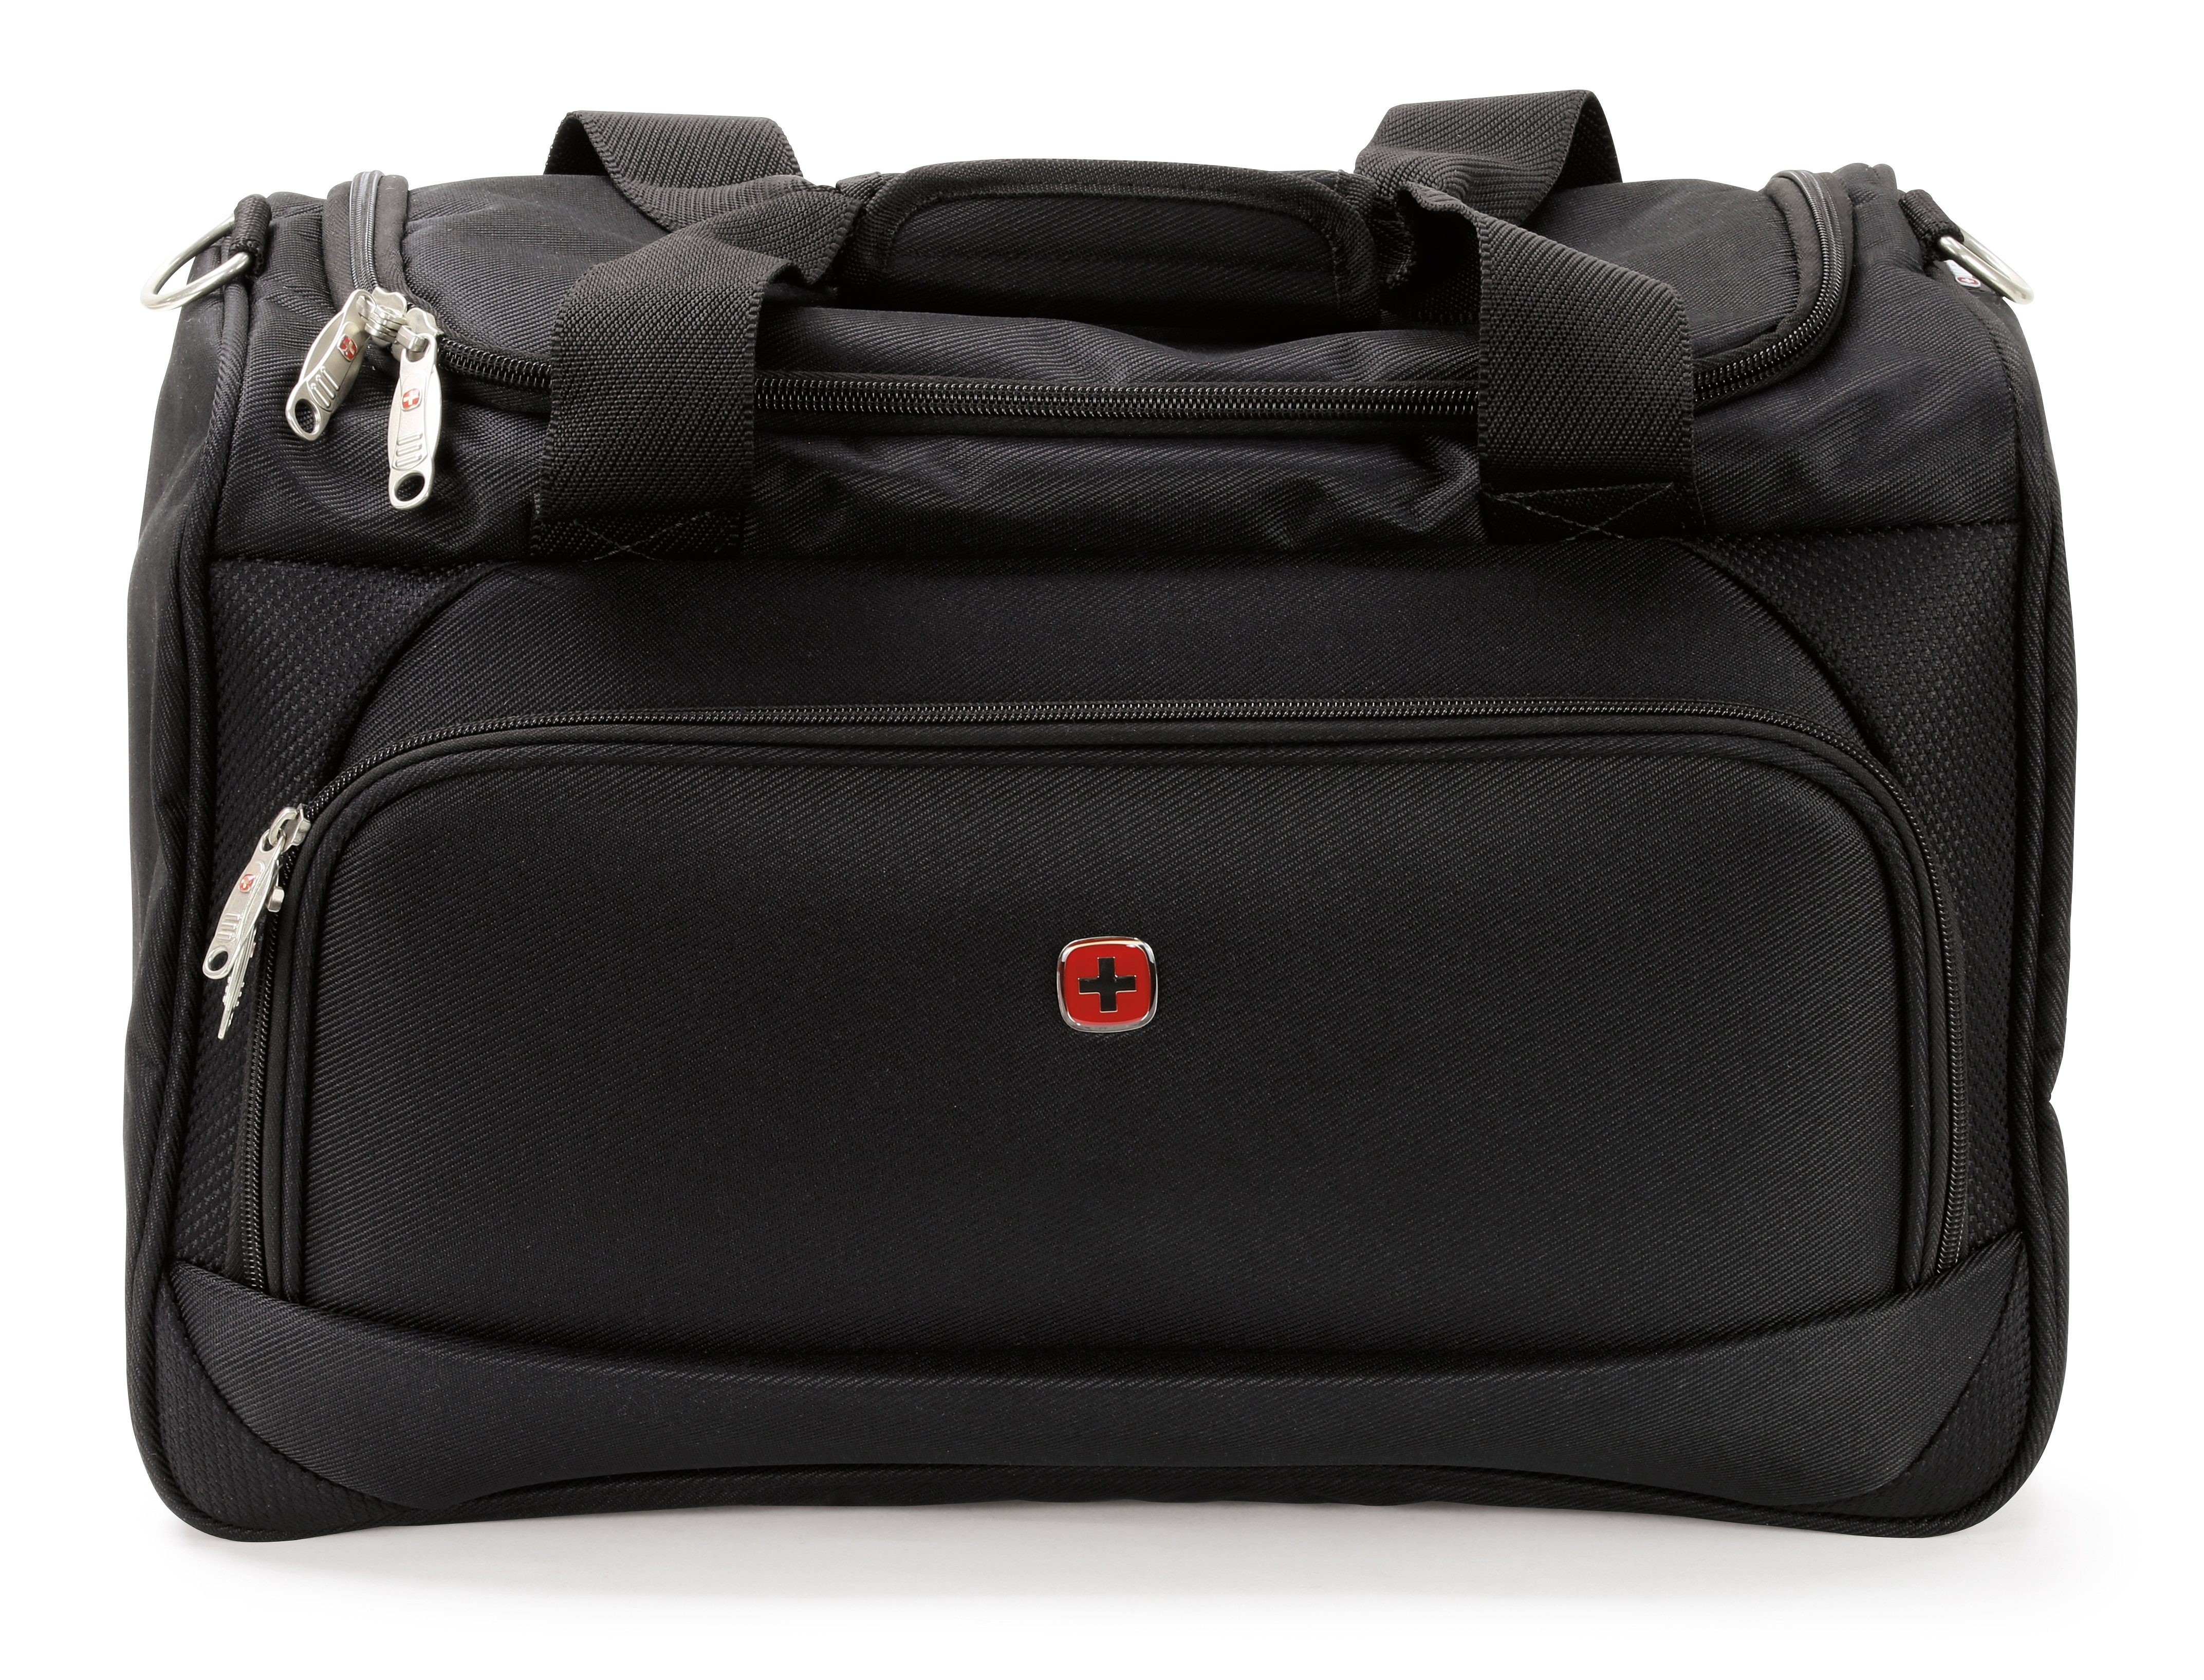 Wenger Reisetasche Luggage Duffle, 46cm x 26cm x 32cm, 40l Volumen, für  Damen und Herren, schwarz